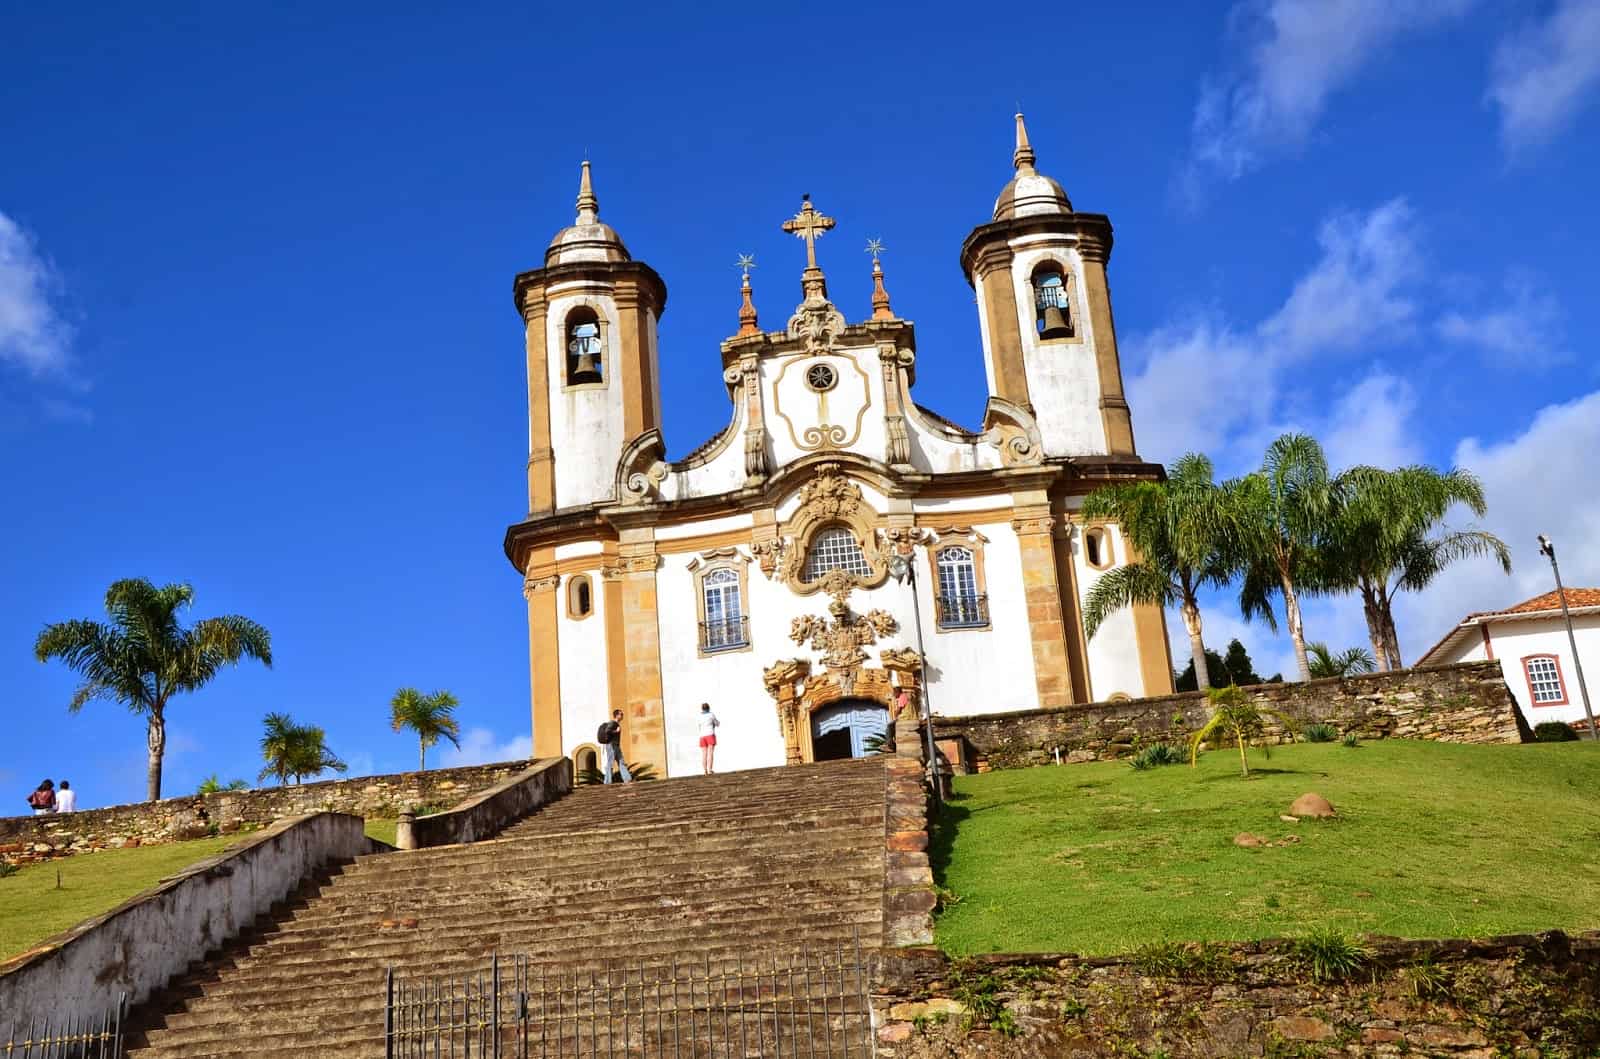 Nossa Senhora do Carmo in Ouro Preto, Brazil